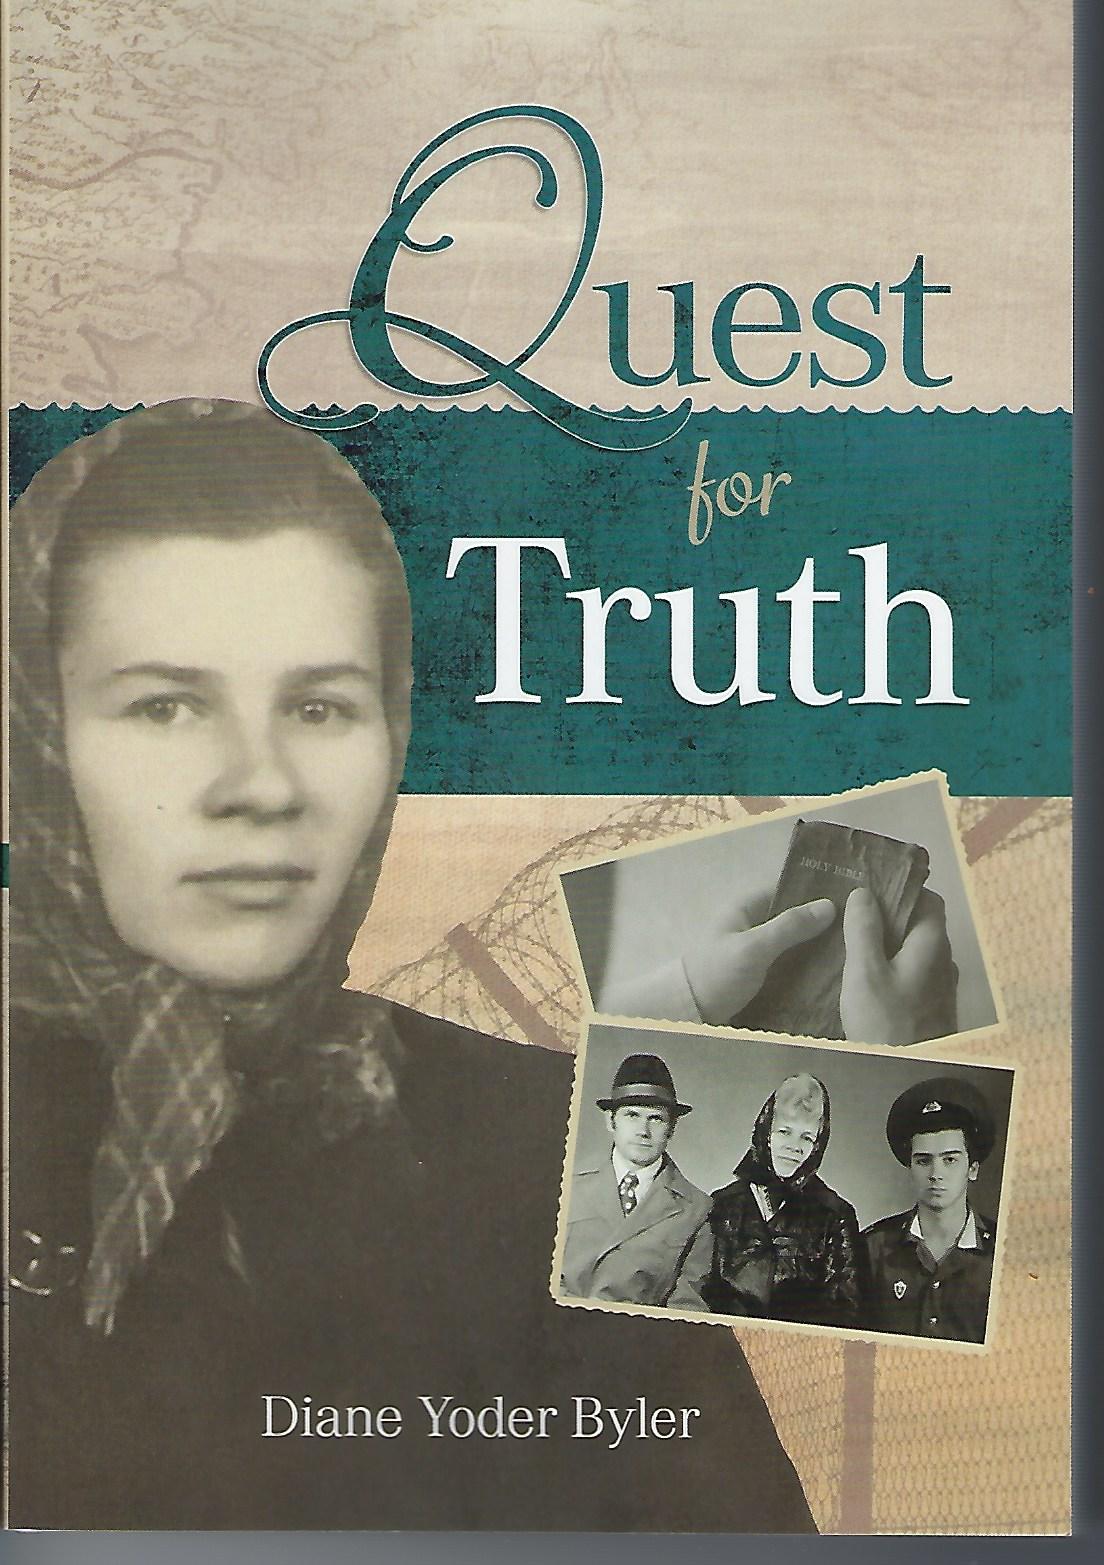 Quest for Truth Diane Byler Yoder